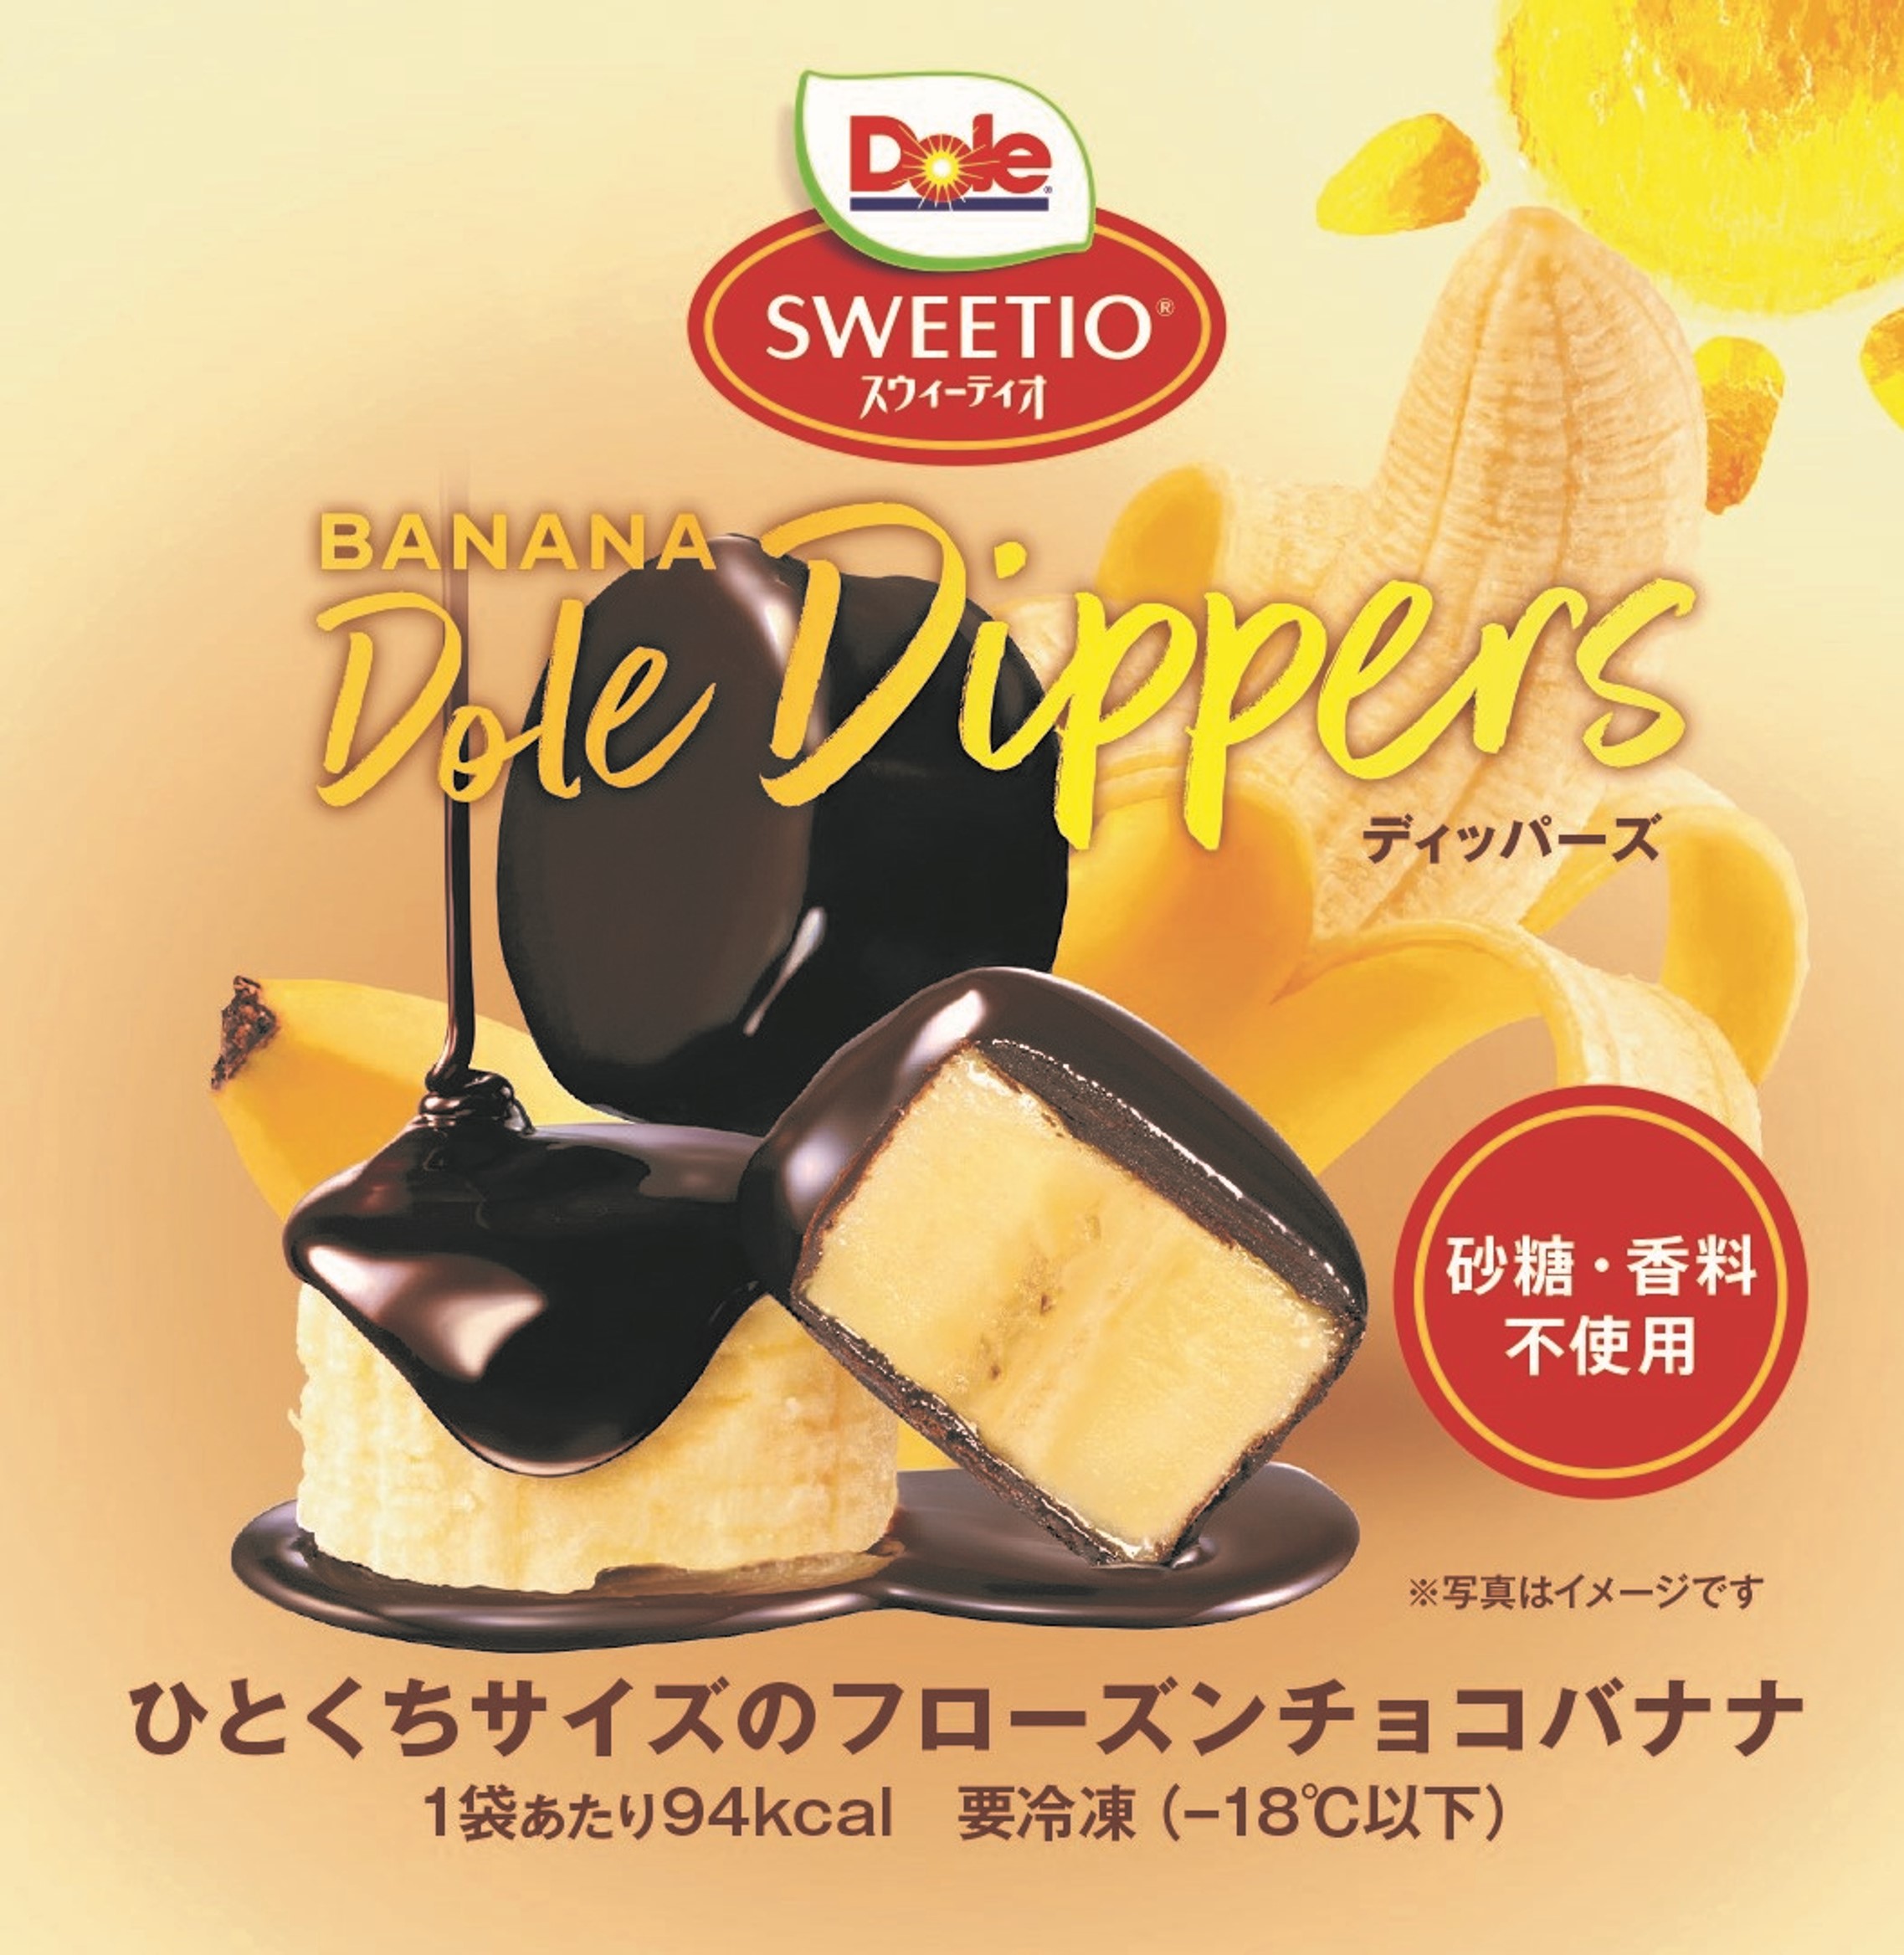 日本初上陸 バナナをチョコレートでコーティングしたフローズンデザート Banana Dole Dippers バナナ ドール ディッパーズ 4月5日 火 より新発売 株式会社ドールのプレスリリース